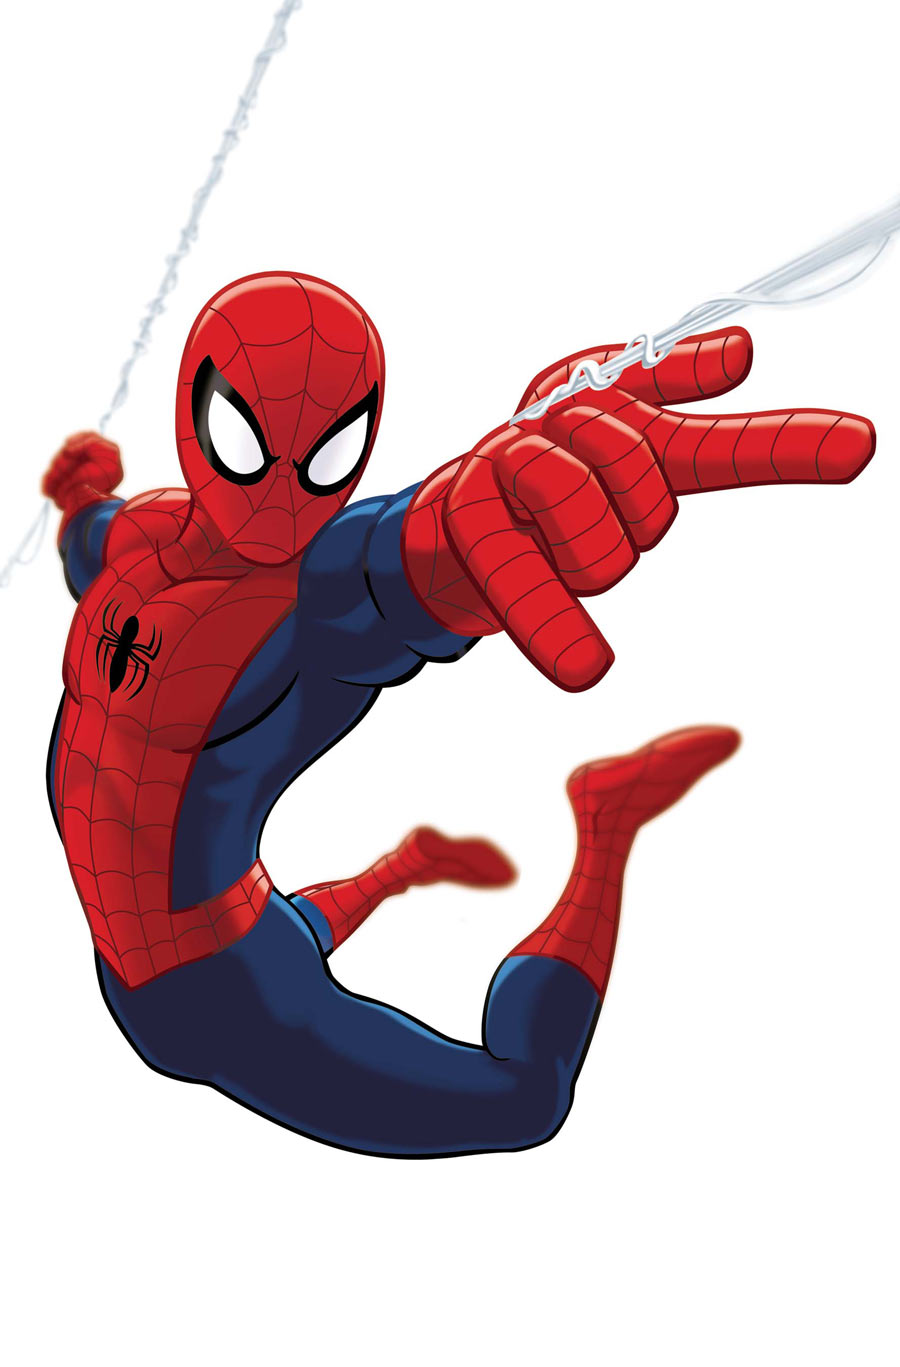 Homem-Aranha 3: Doutor Estranho deve complicar vida de Peter